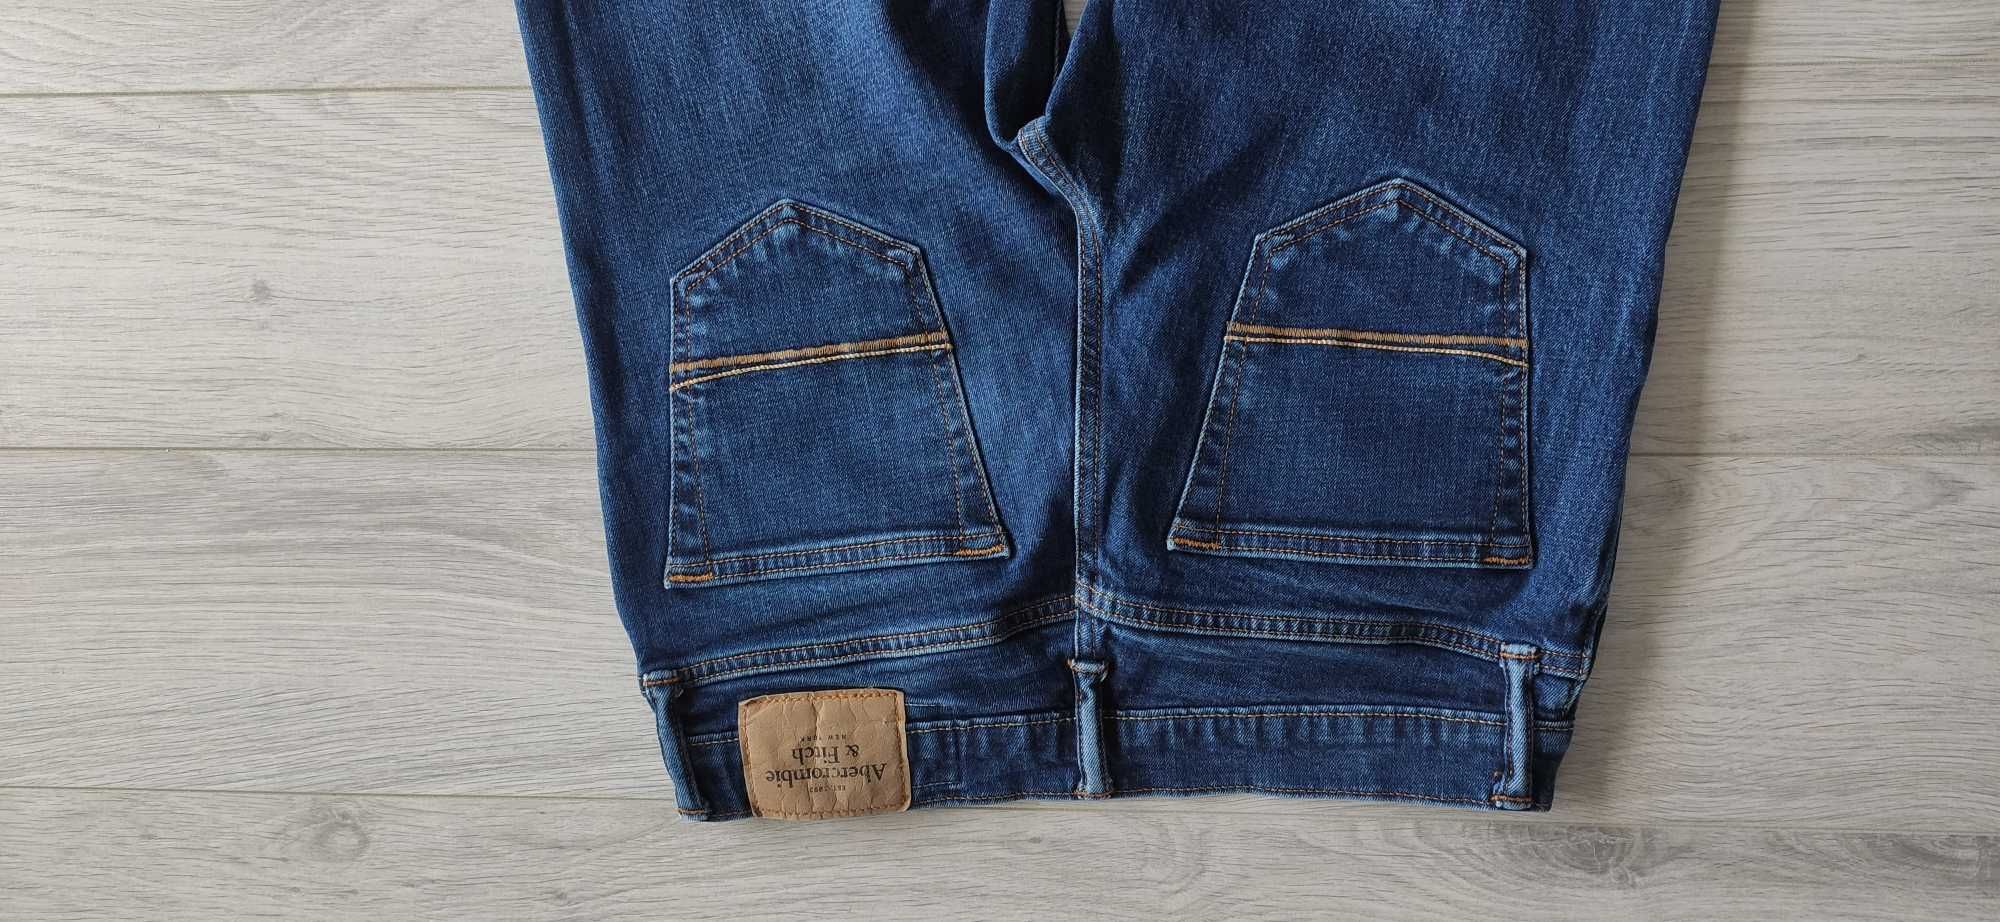 Spodnie jeansowe Abercrombie & Fitch 30/32